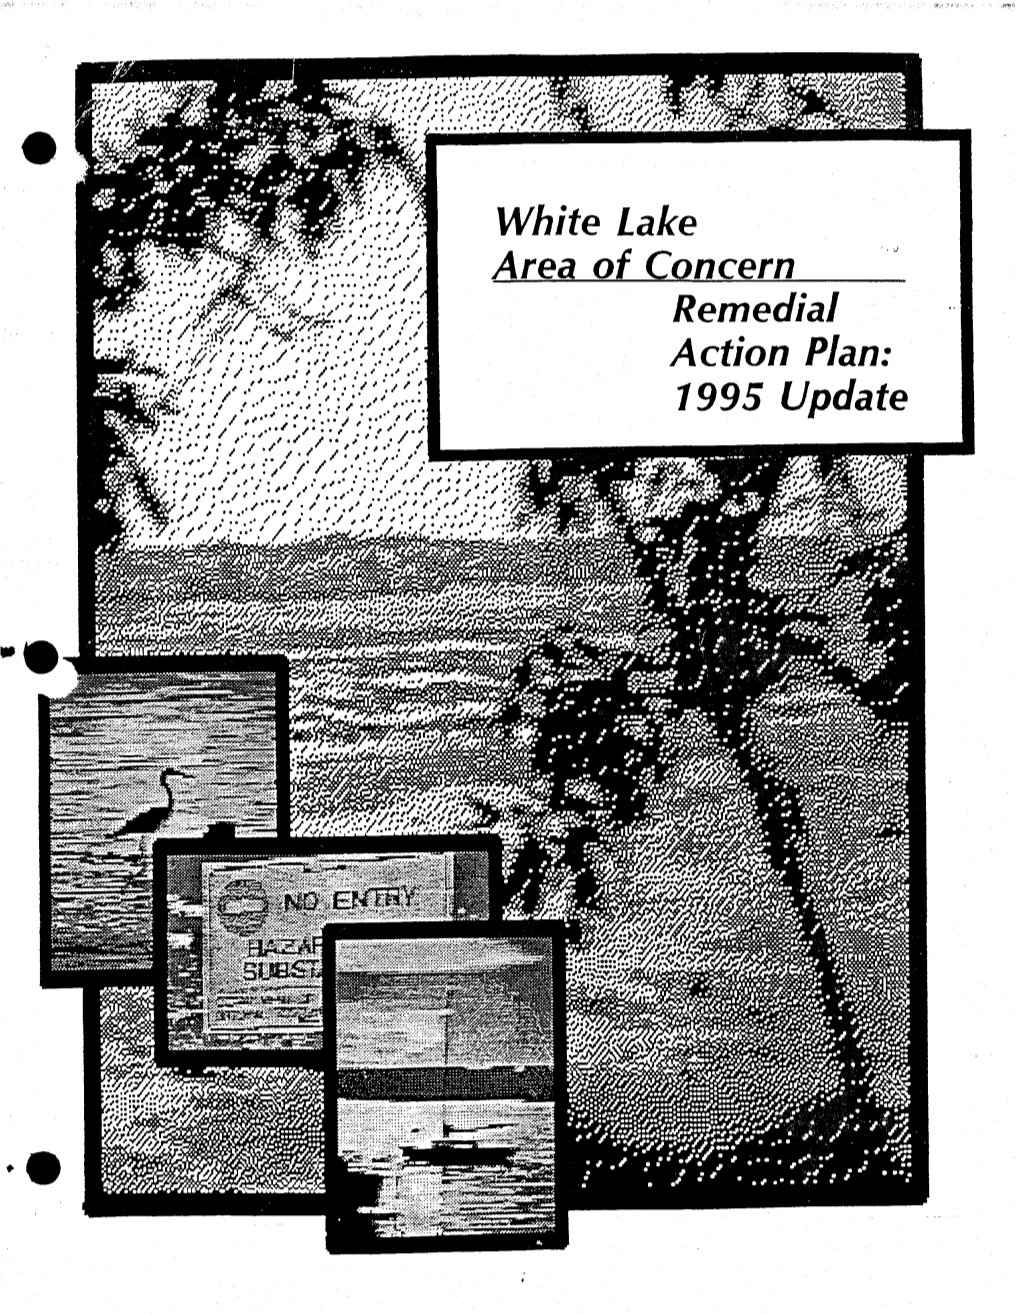 White Lake AOC